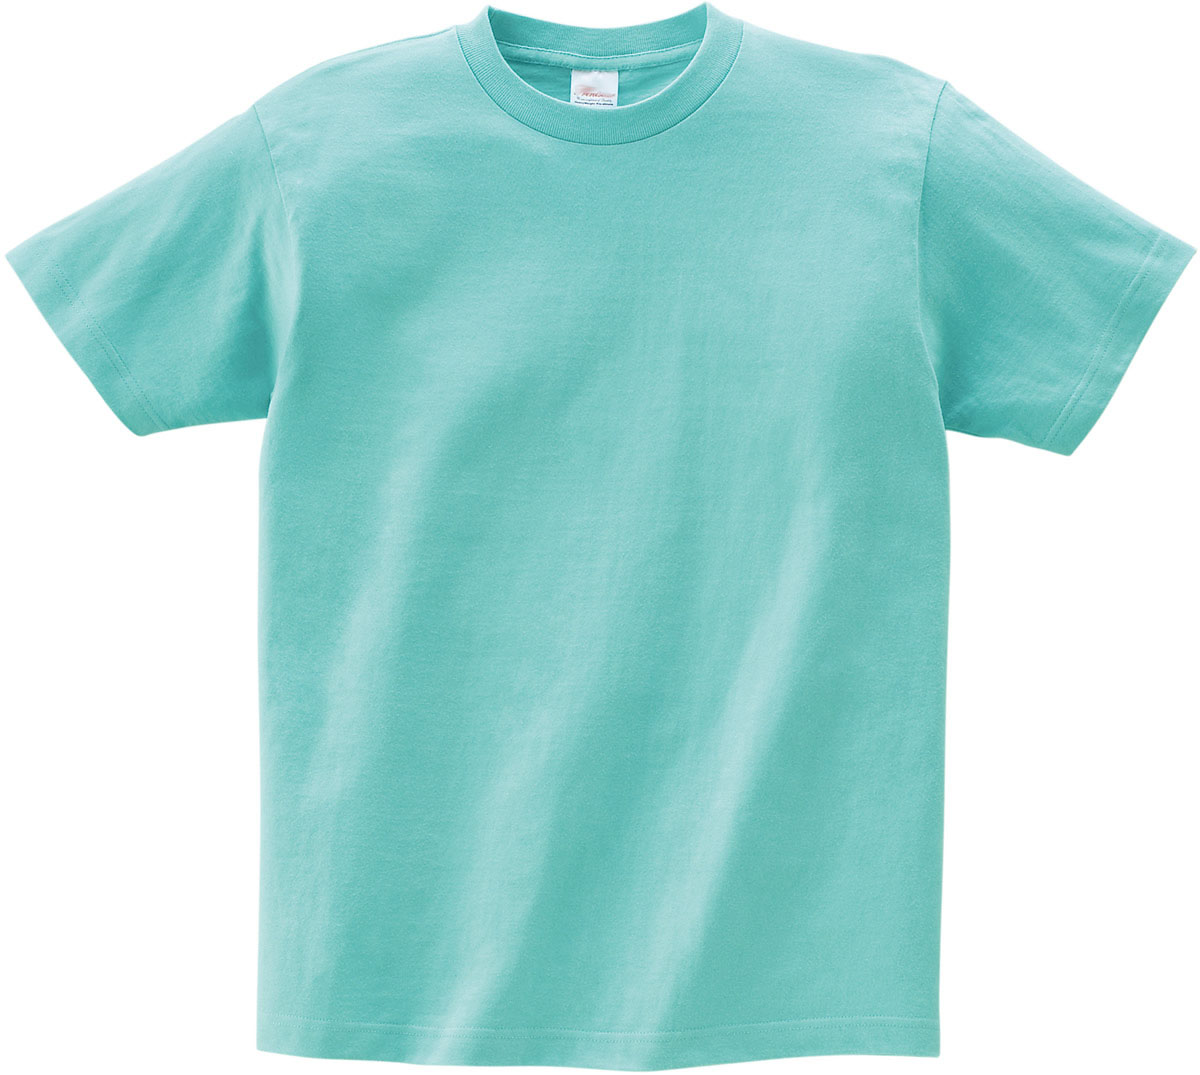 190G日本圓領耐穿形優質T恤，環保染色不脫色不起球，T恤質感厚實平挺。歡迎批發或logo定制印刷，